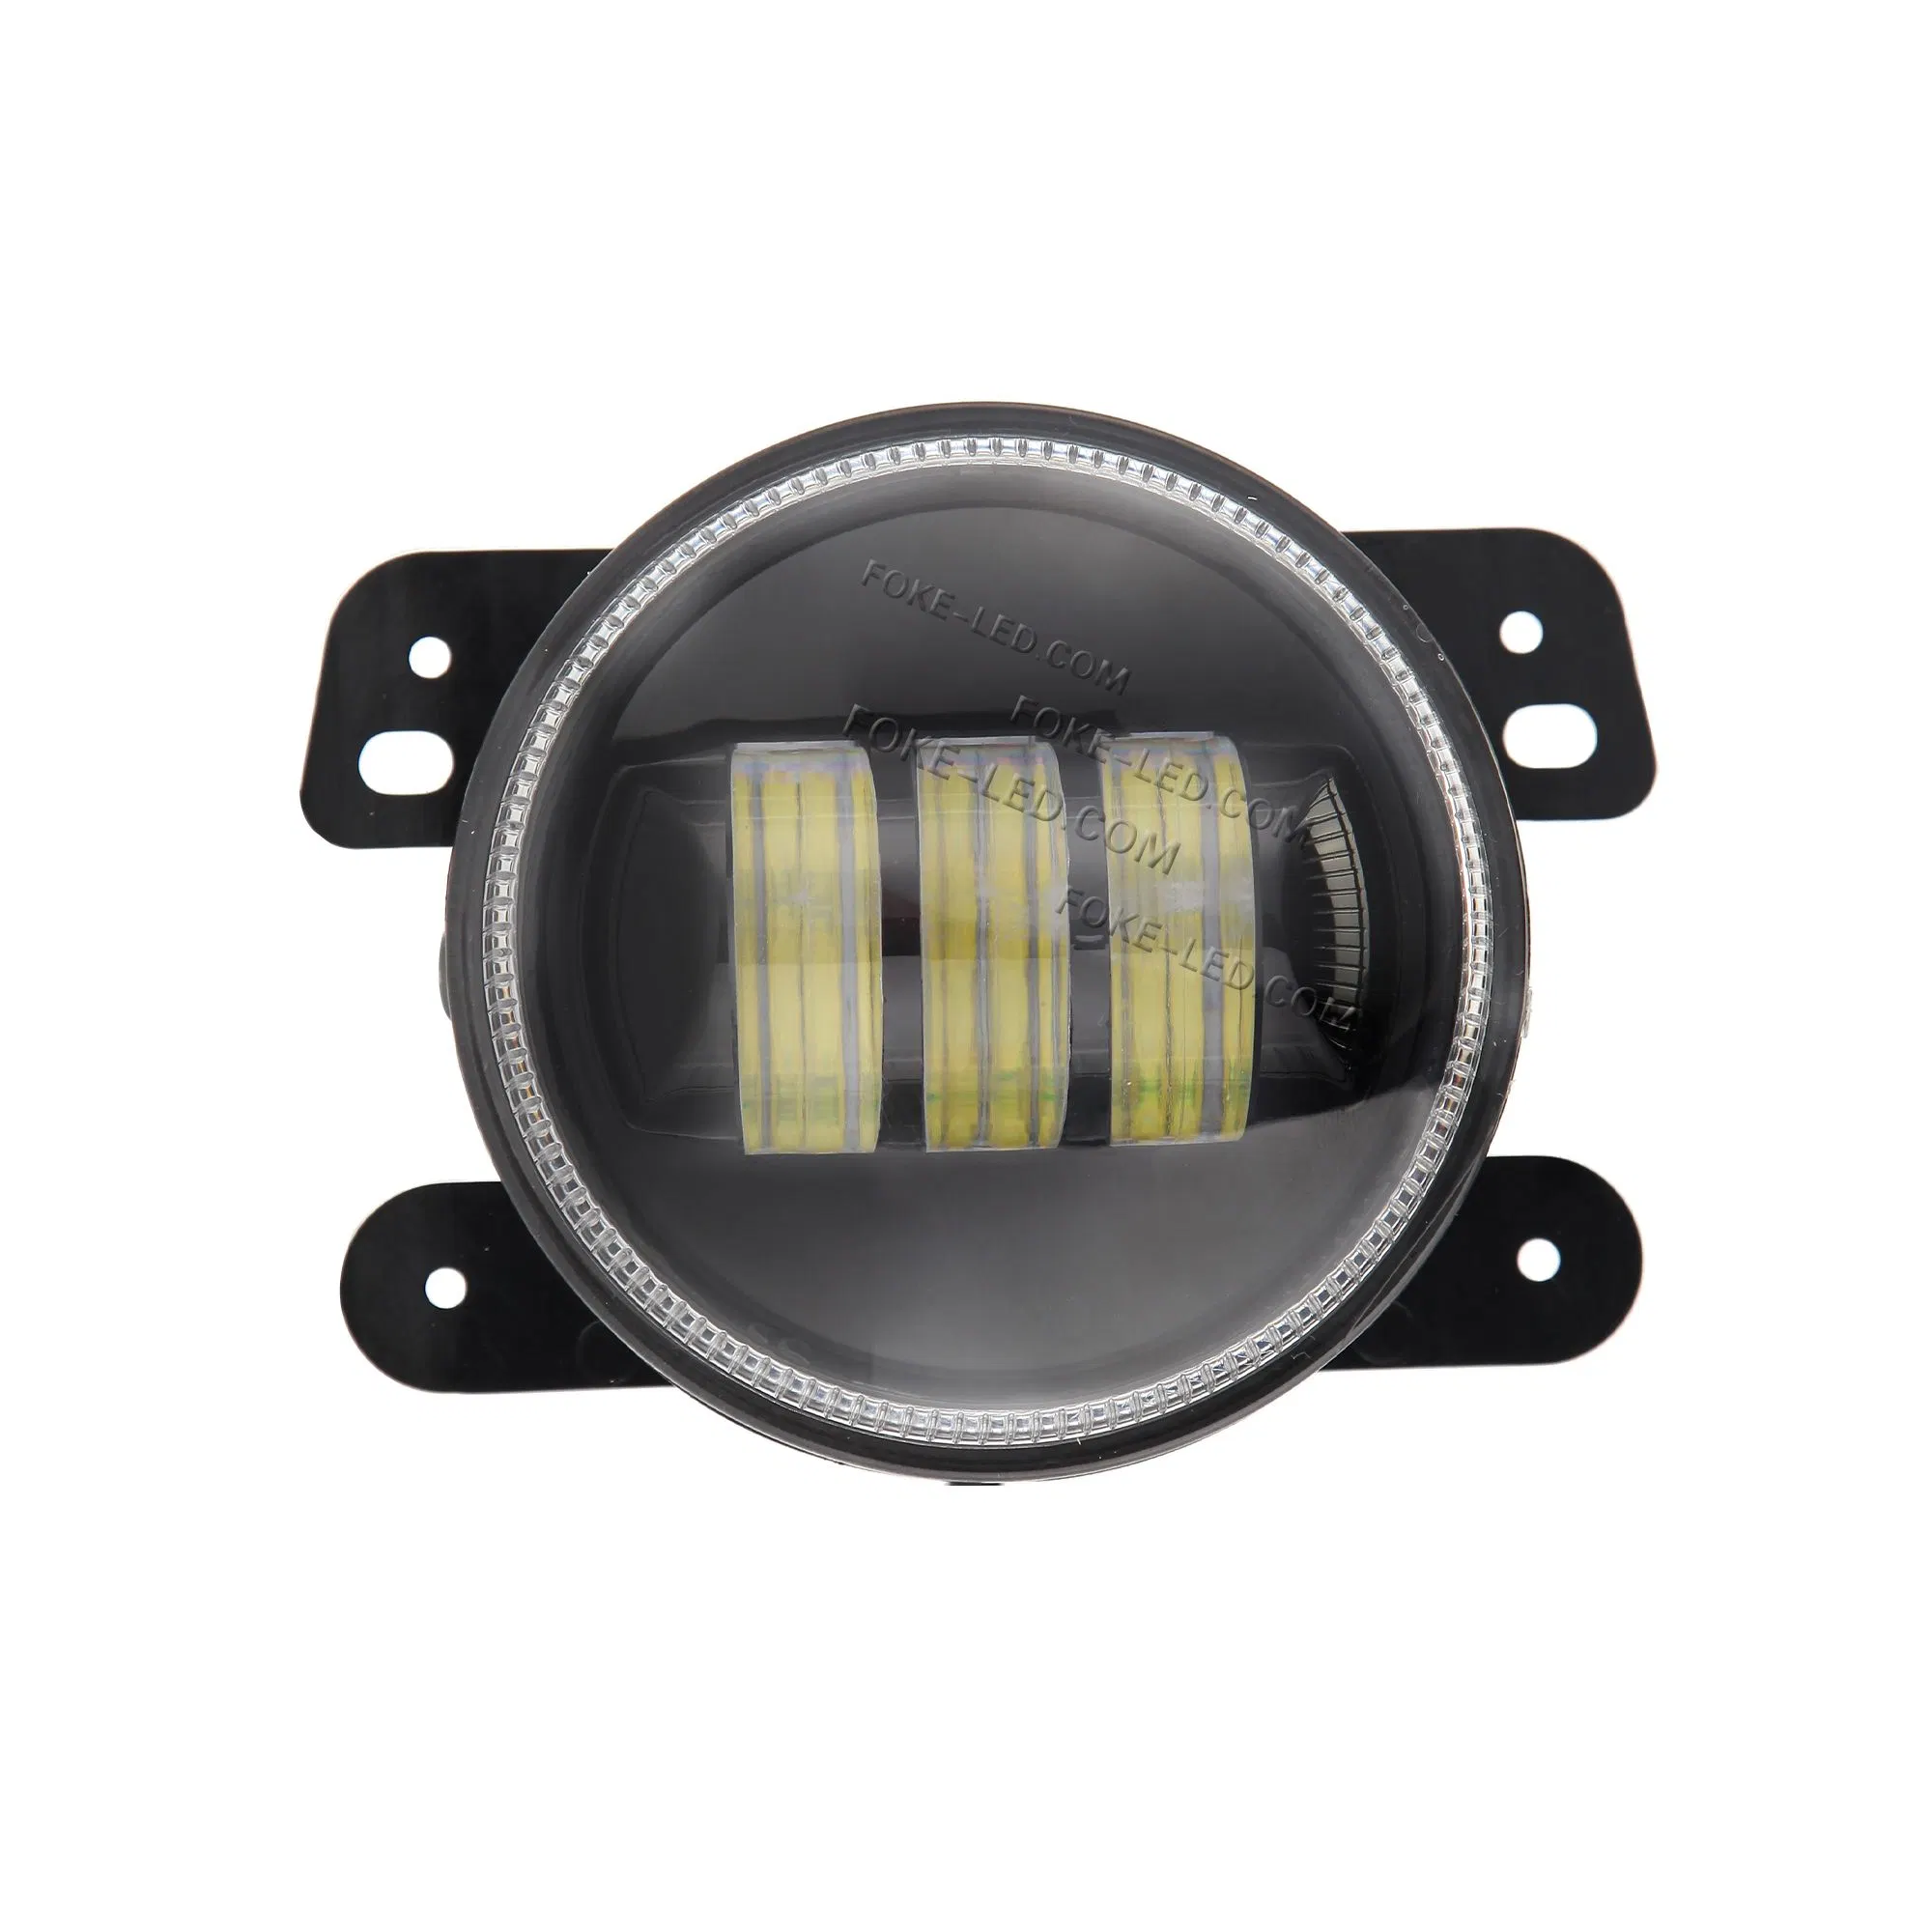 Montaje empotrado en la ronda de faros de LED para iluminación de automoción coche moto